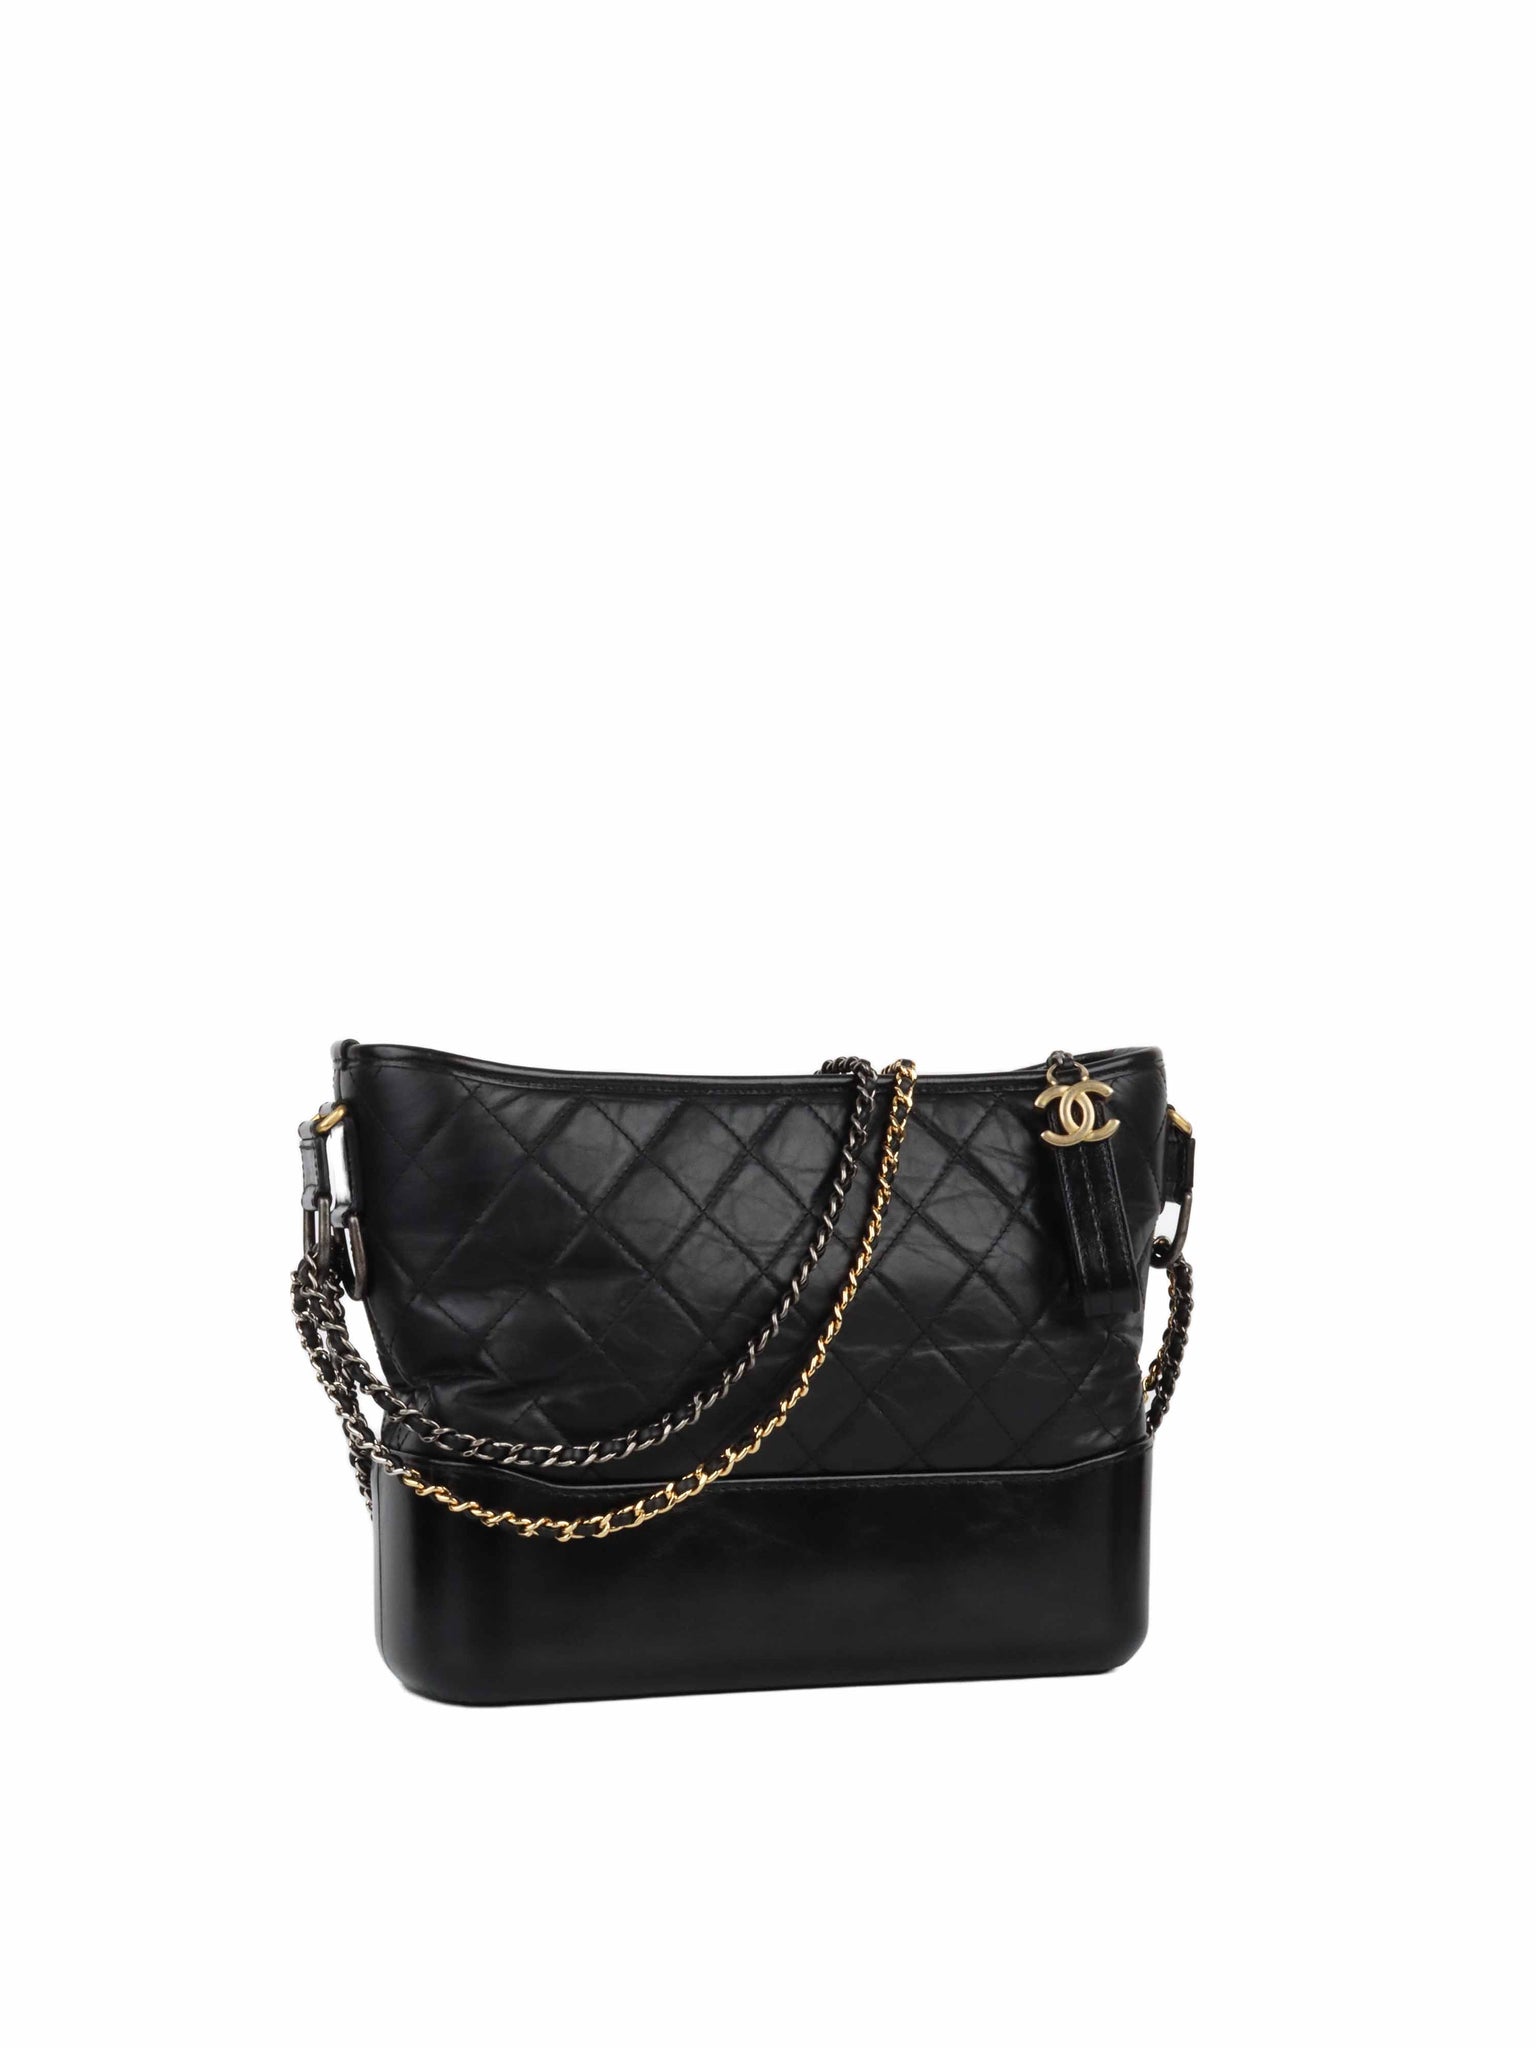 Chanel Boy Black Patent Leather Bag – Votre Luxe